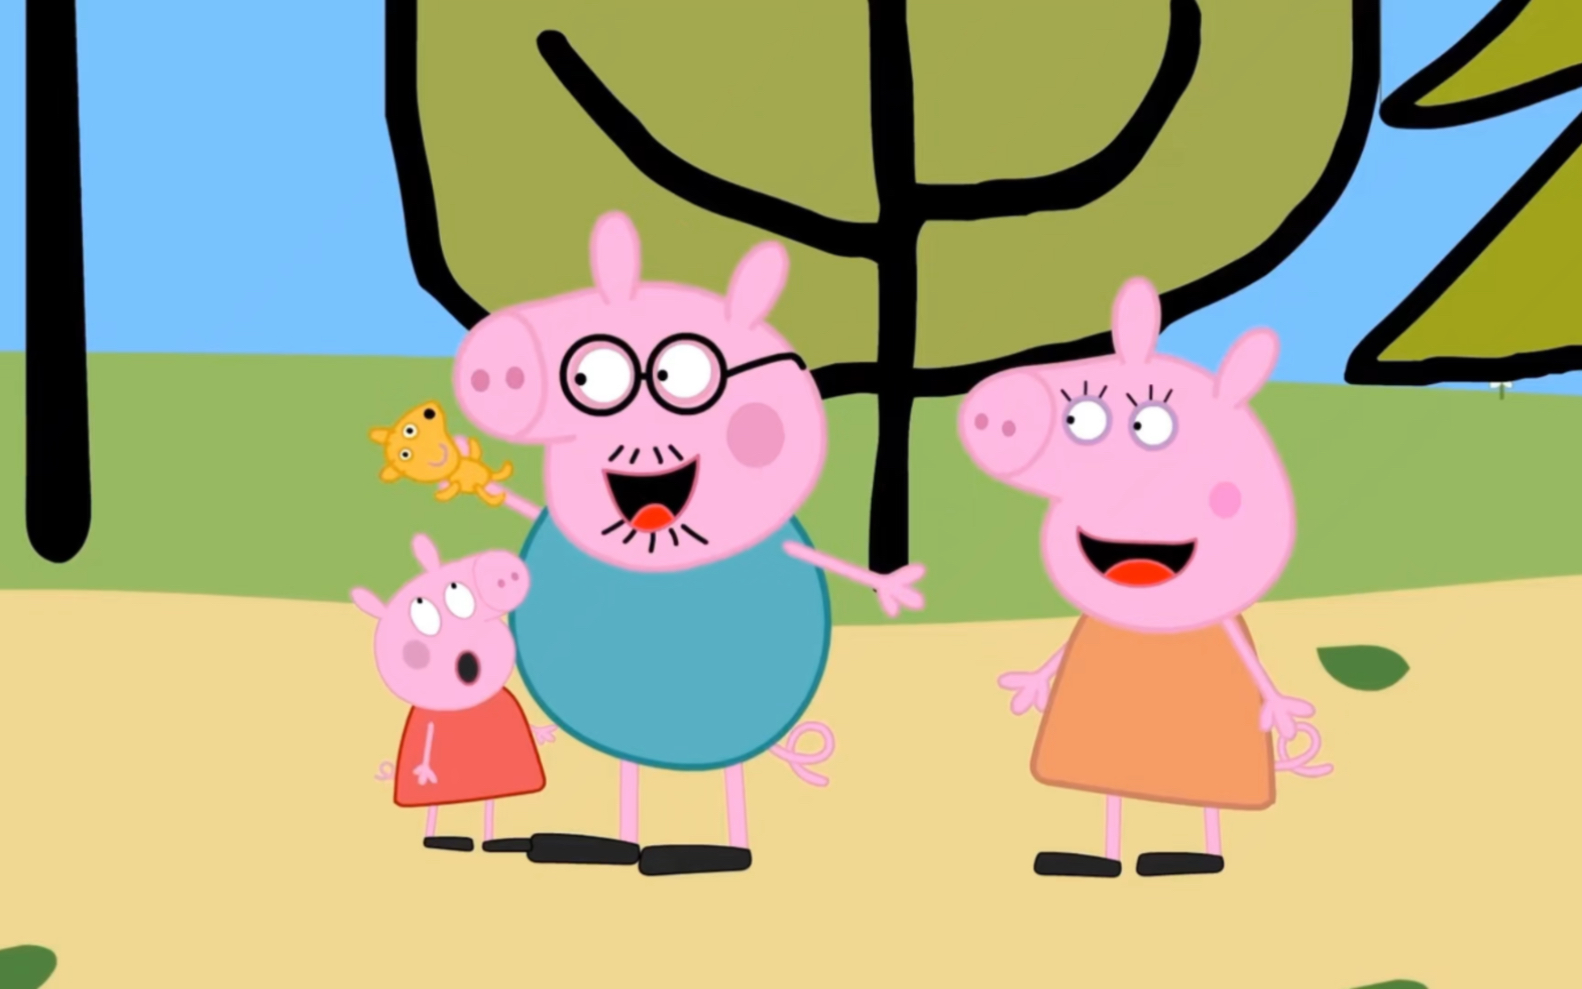 小猪佩奇动画:伤心欲绝的猪妈妈离开了猪爸爸